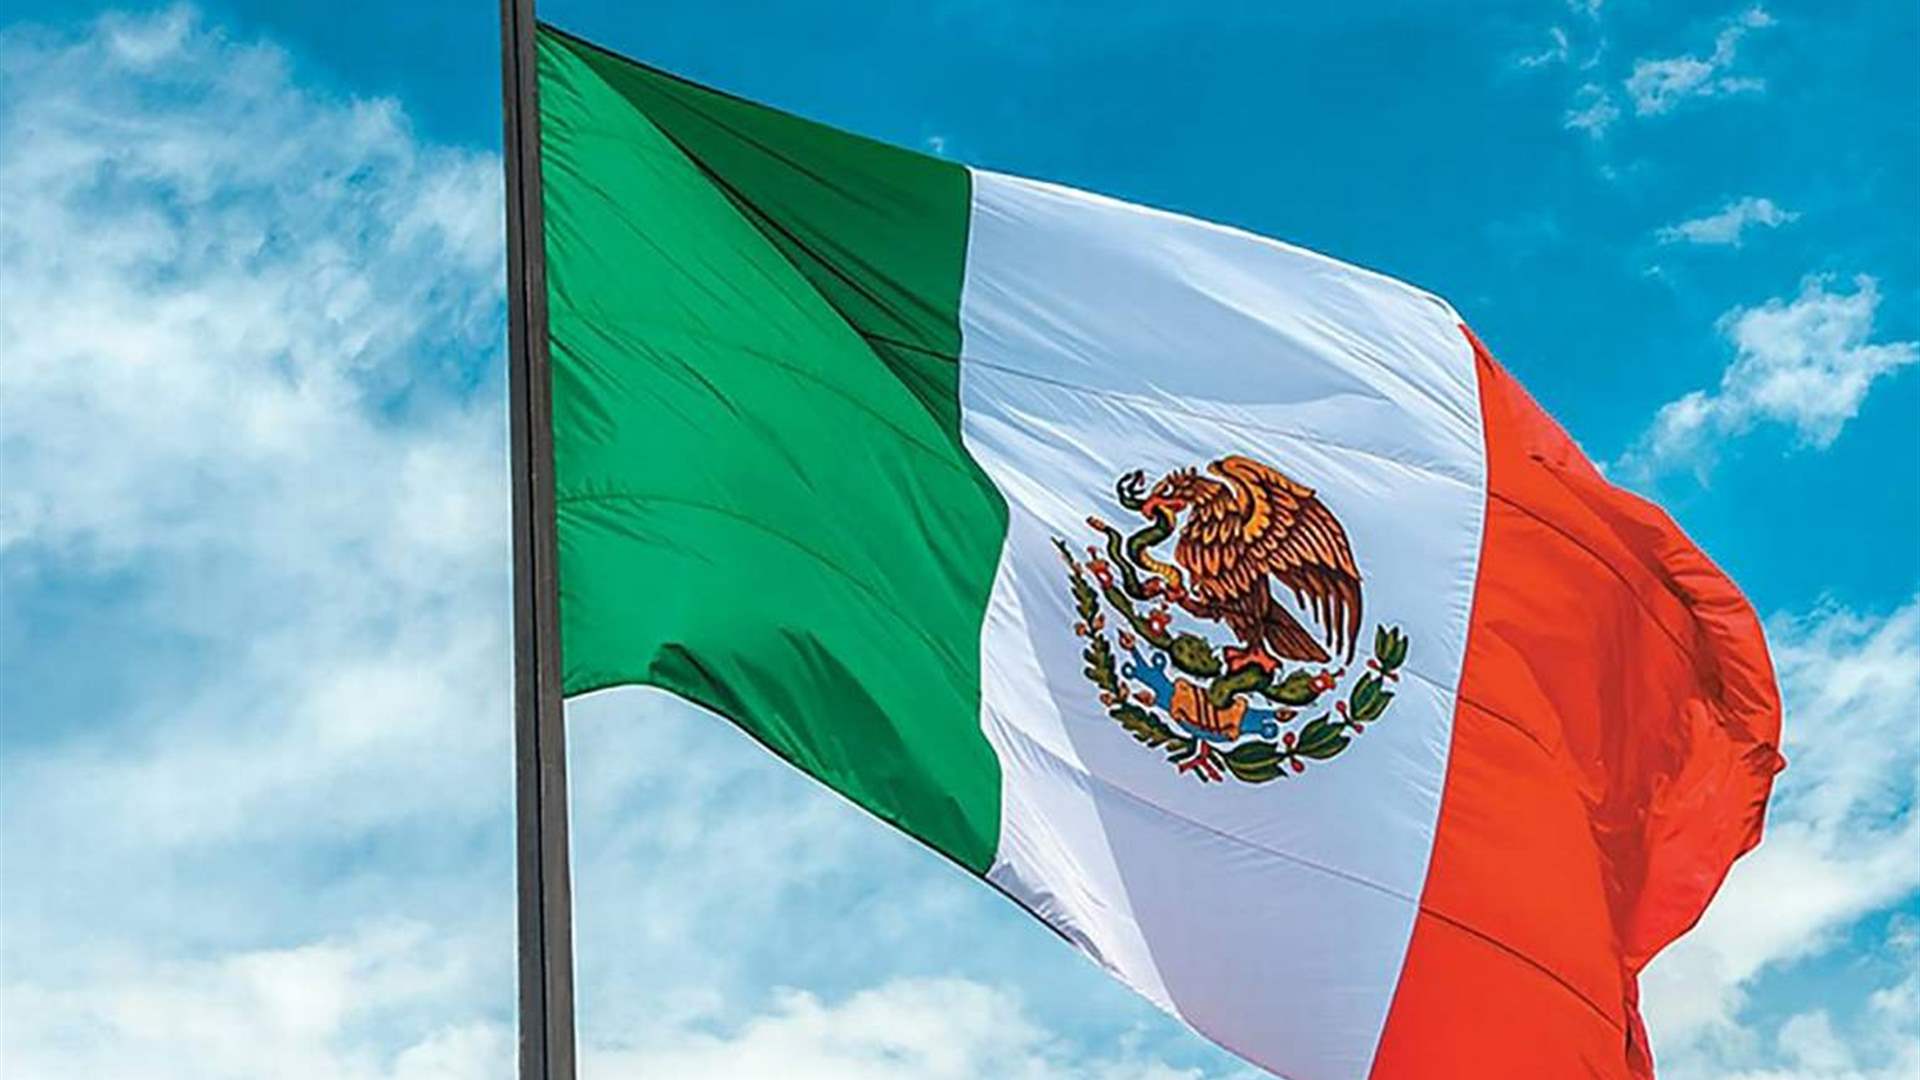 إغتيال صحافي في وضح النهار في المكسيك